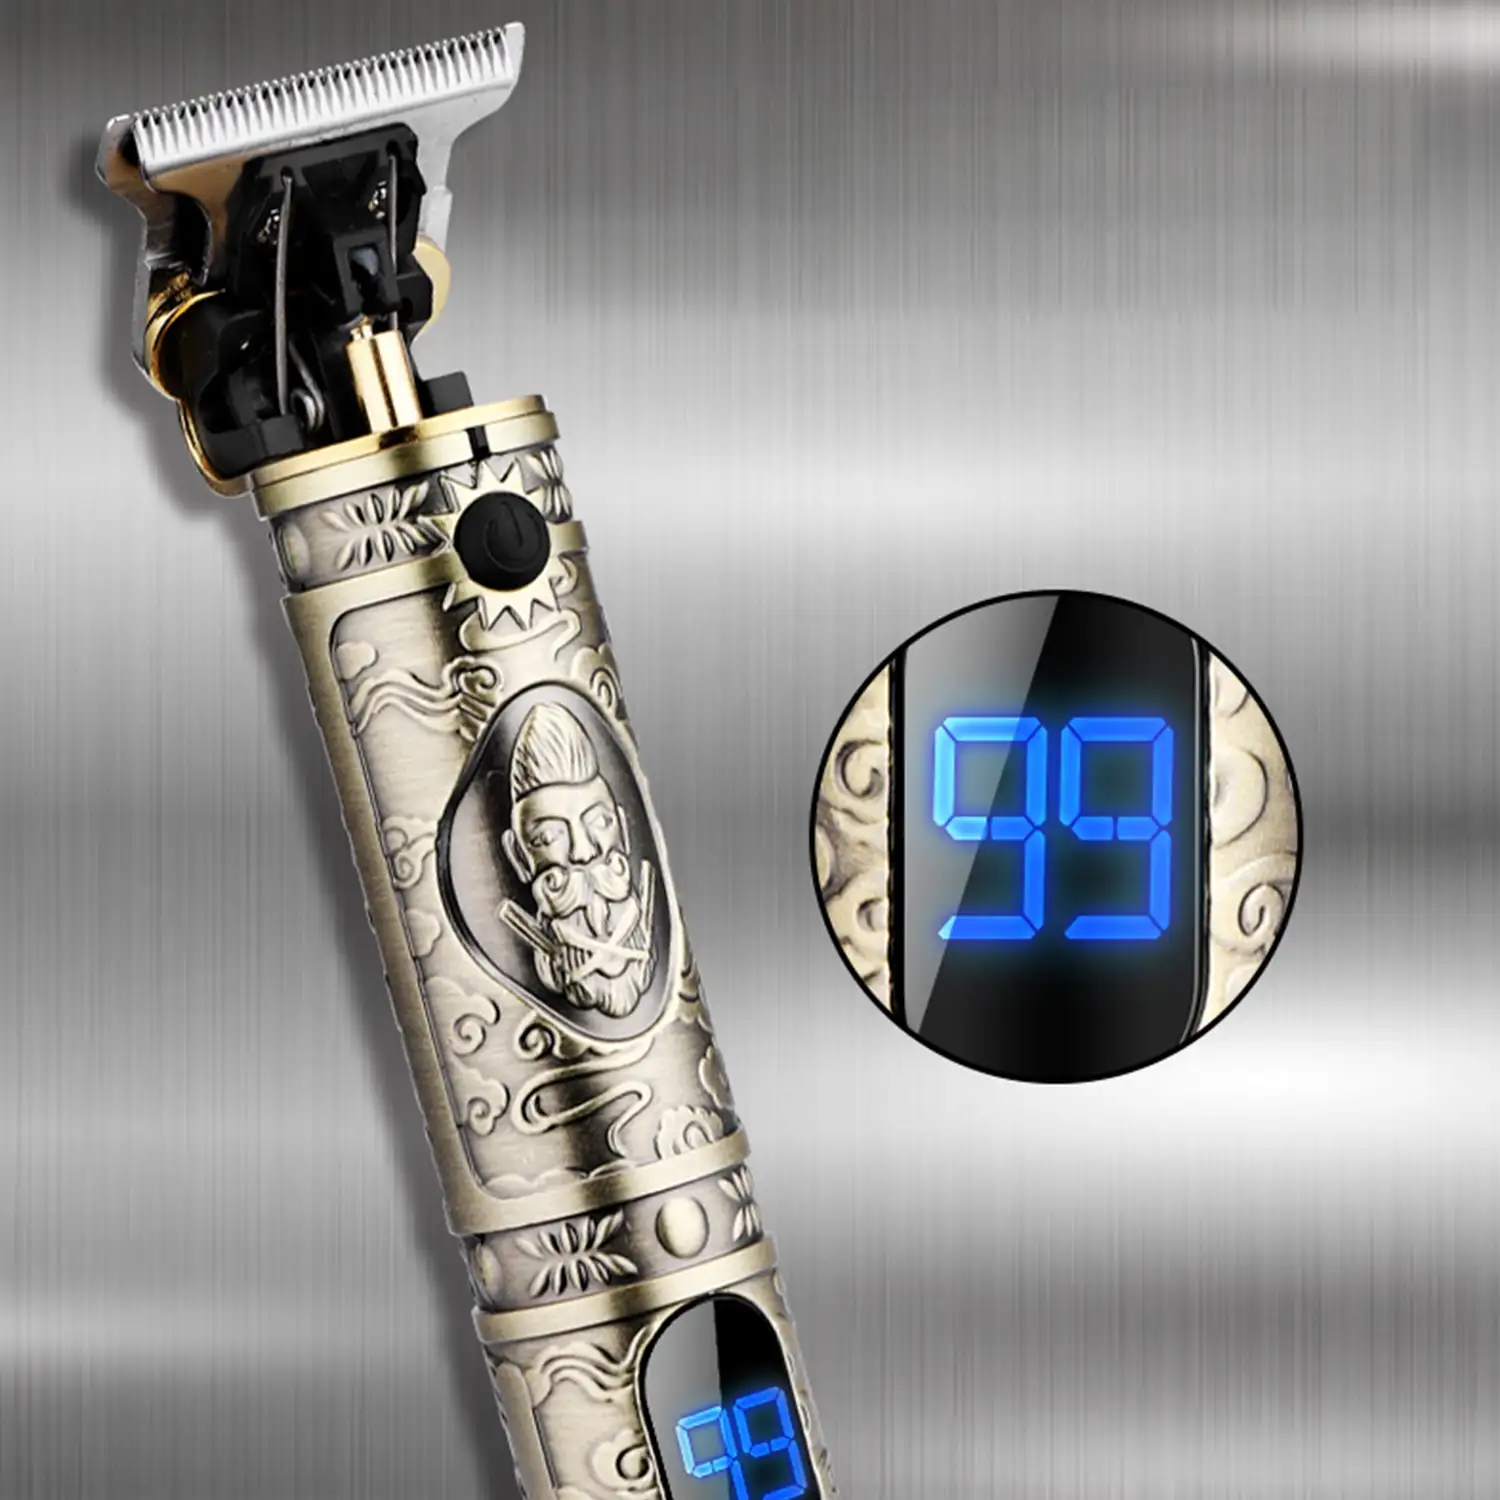 Recortador perfilador para pelo y barba LM-300. Diseño vintage completamente metálico. Con peines de 1 a 3mm y juego de accesorios. Batería recargable.